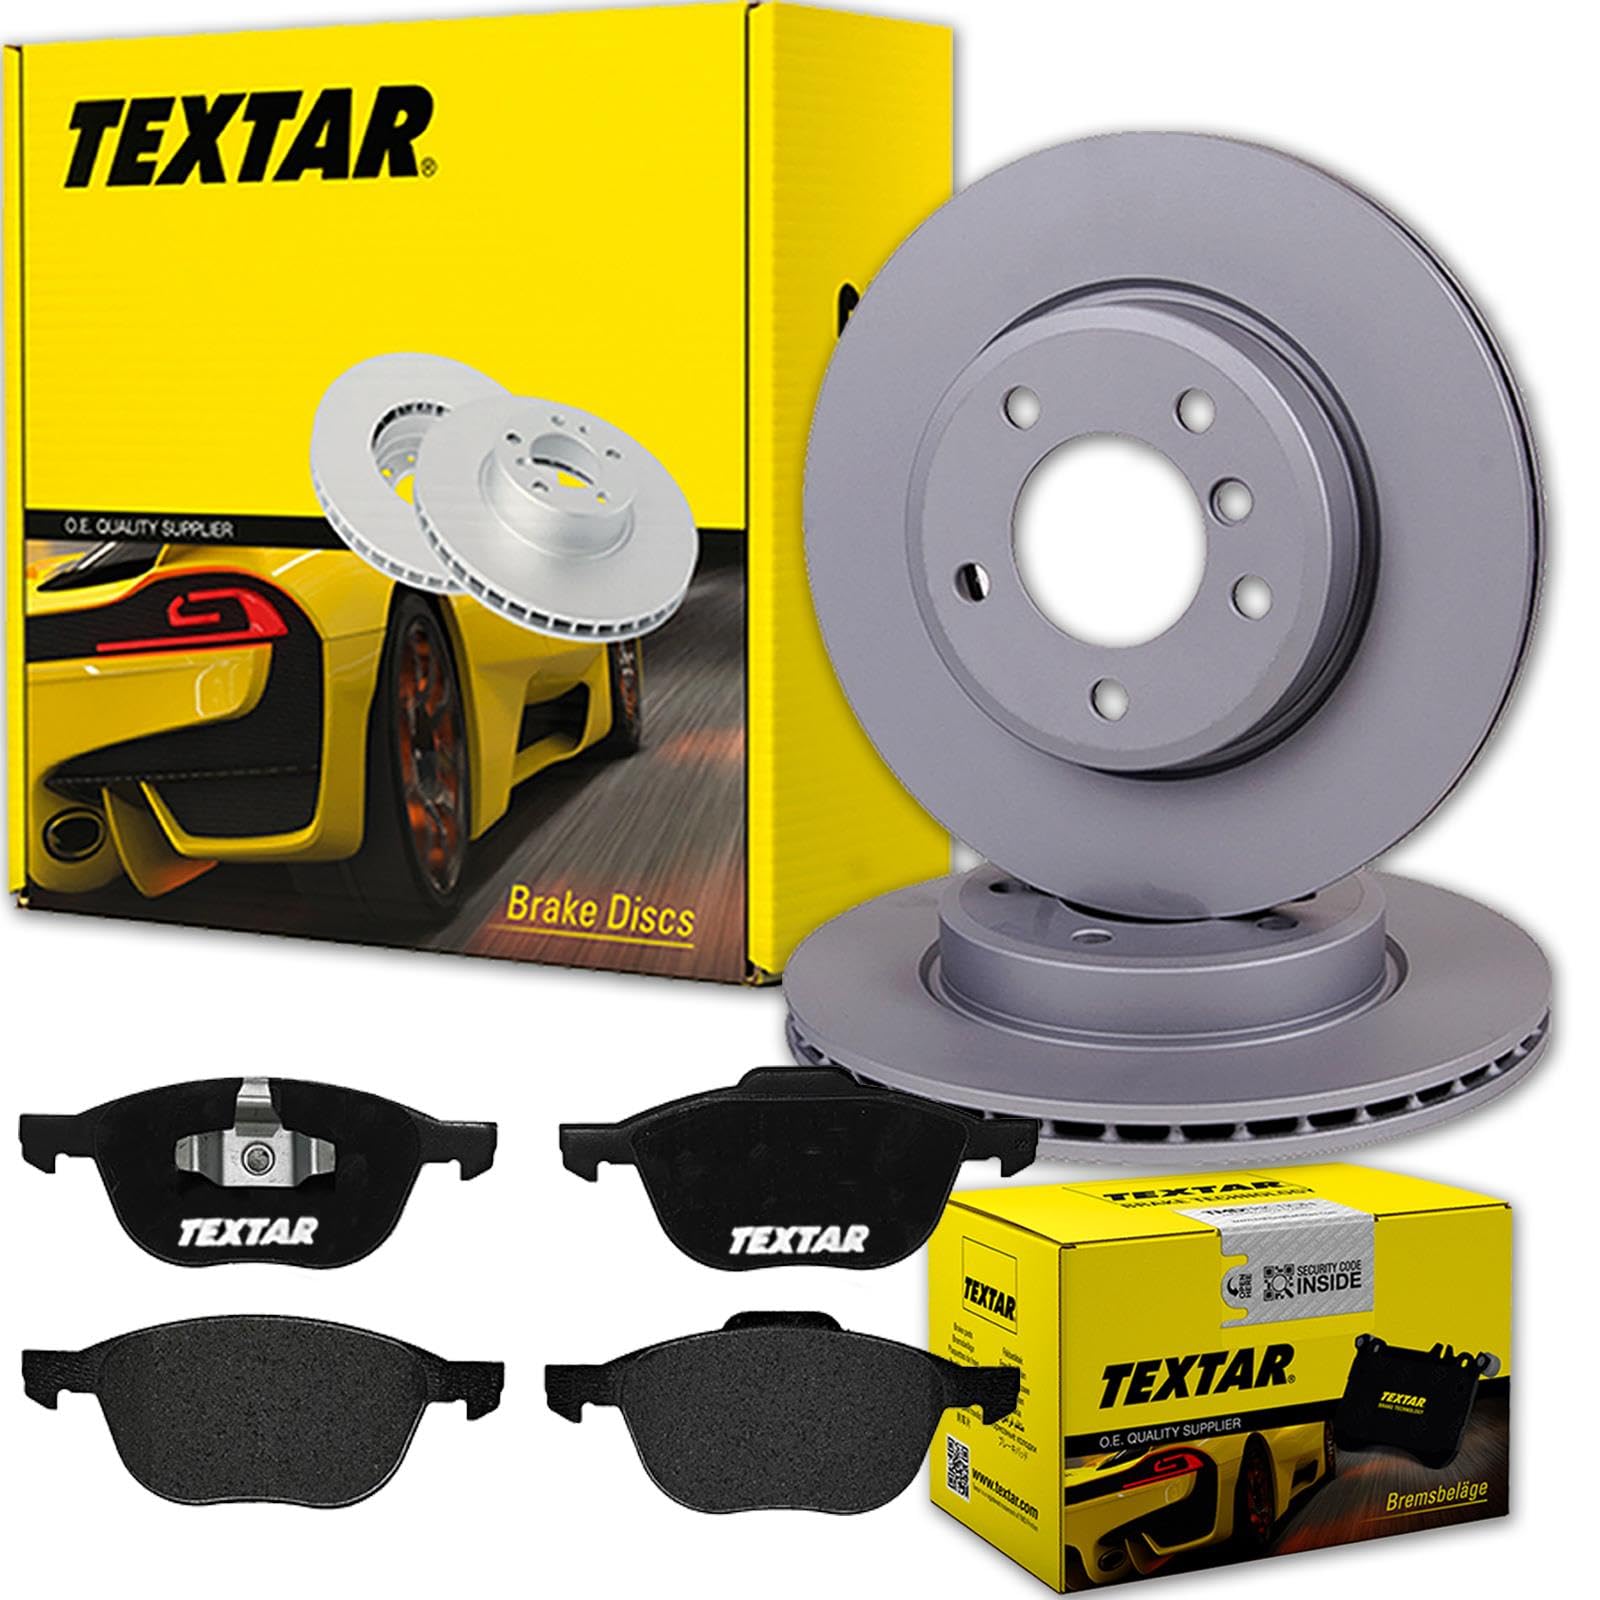 TEXTAR Bremsscheiben 278mm + Beläge vorne passend für 3 BK BL + 5 CR19 CW von Generic